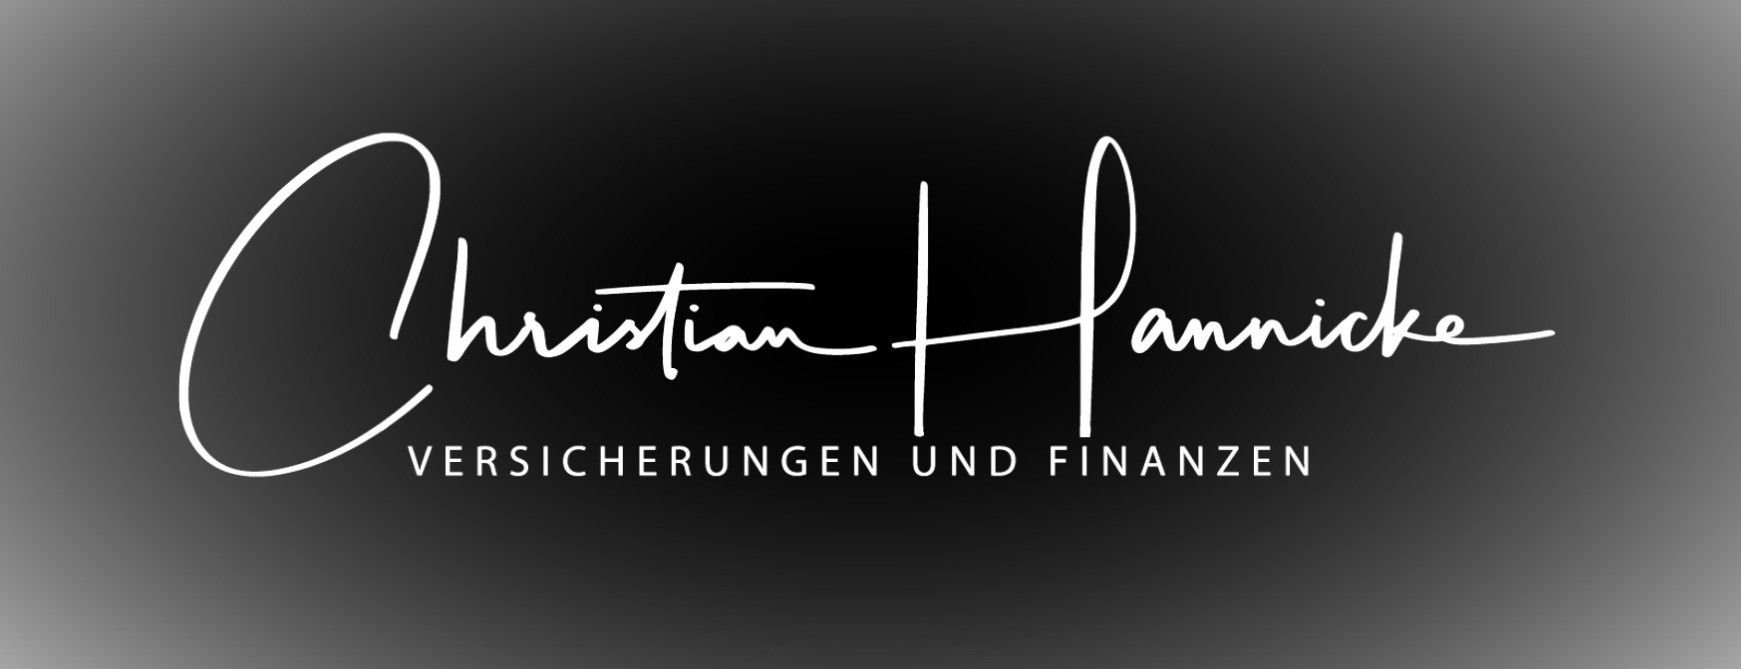 Allianz Versicherung Christian Hannicke Berlin -                 Erfolgreich seit 1989  